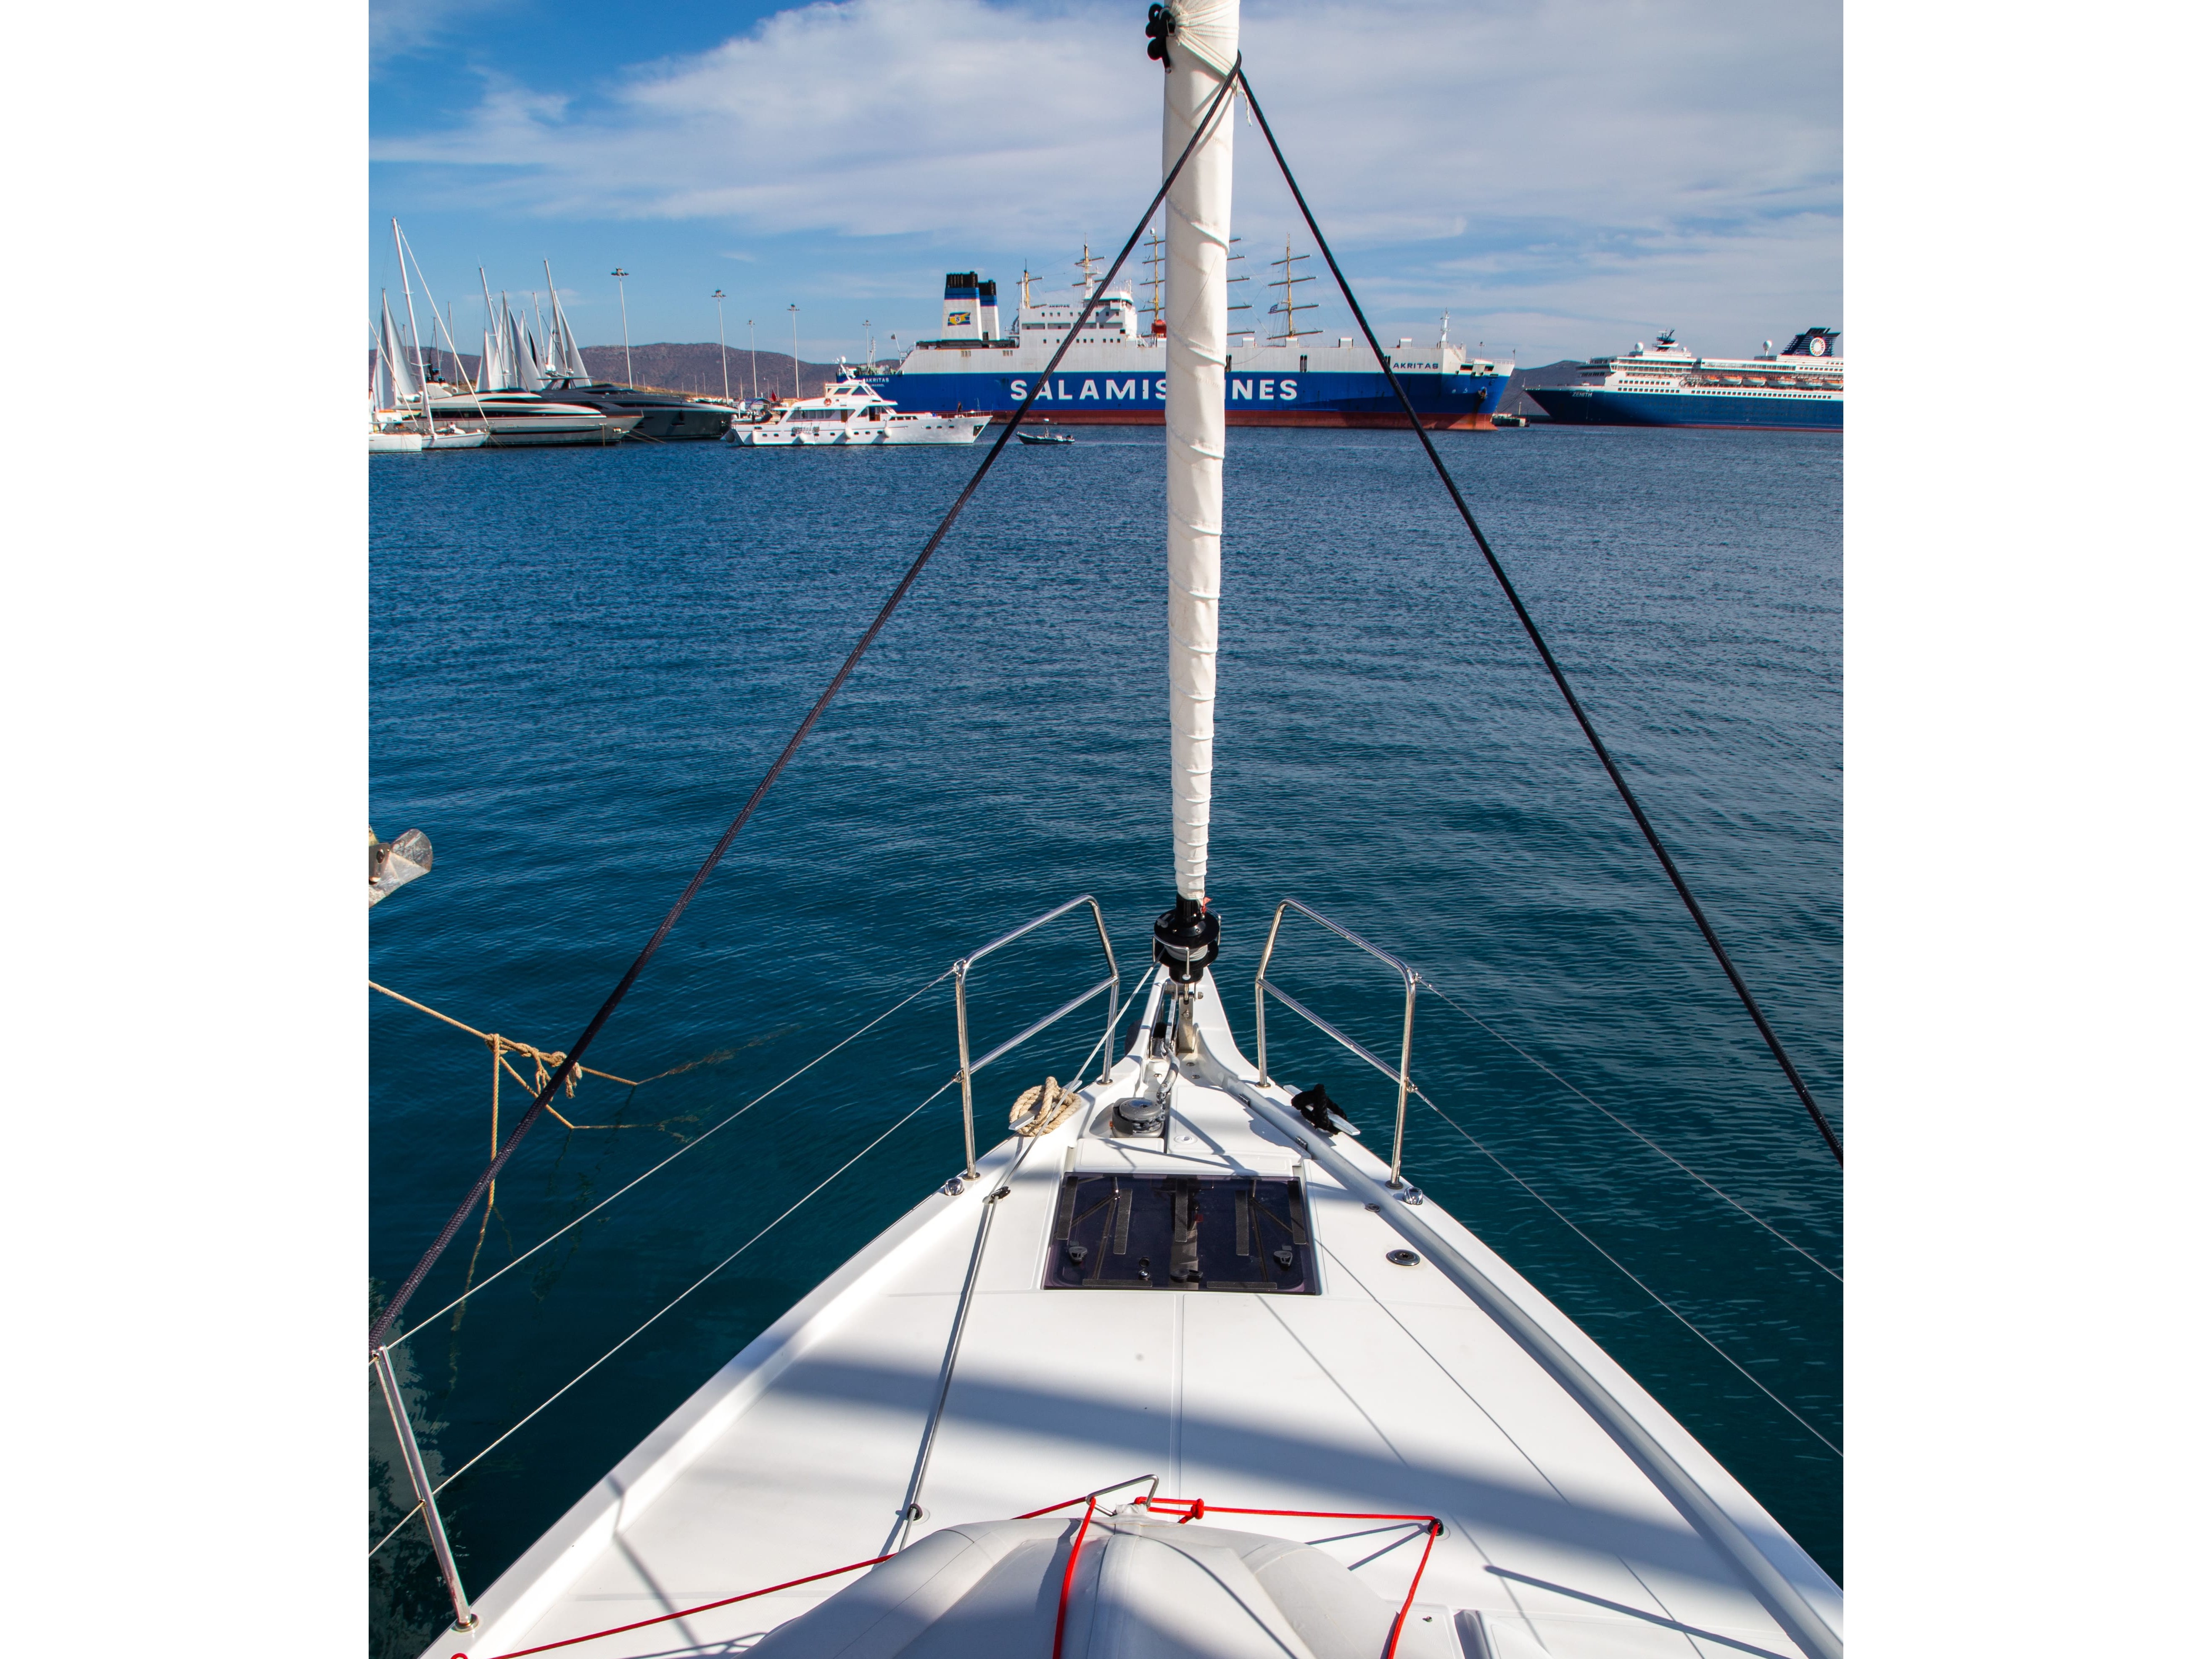 Sun Odyssey 490 - Yacht Charter Preveza & Boat hire in Greece Ionian Sea South Ionian Lefkada Preveza Preveza Main Port 3